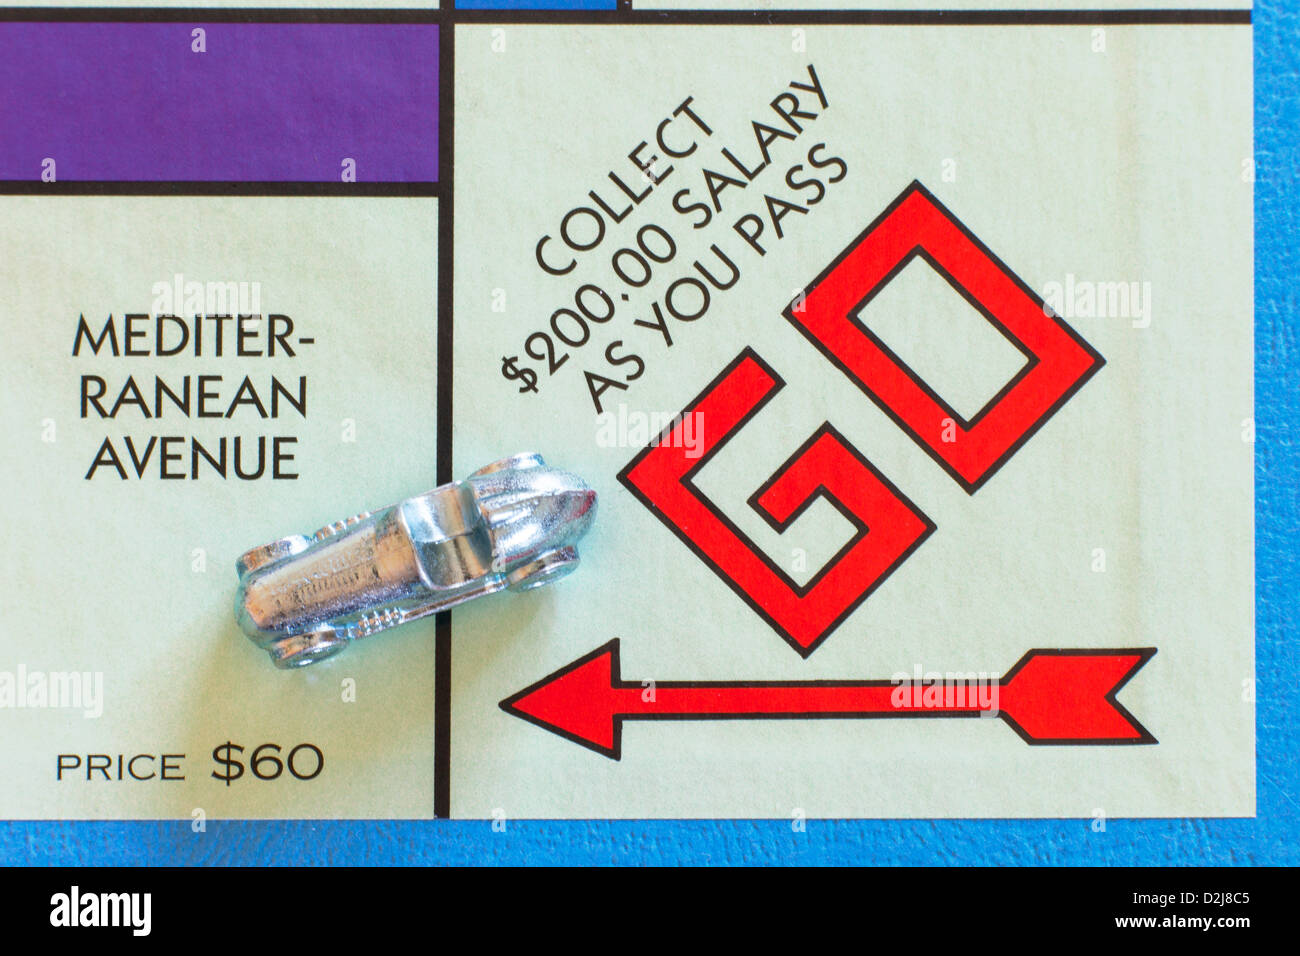 Monopoly Brettspiel mit Rennwagen Token - Mediterranean Avenue und weiter Räume Stockfoto